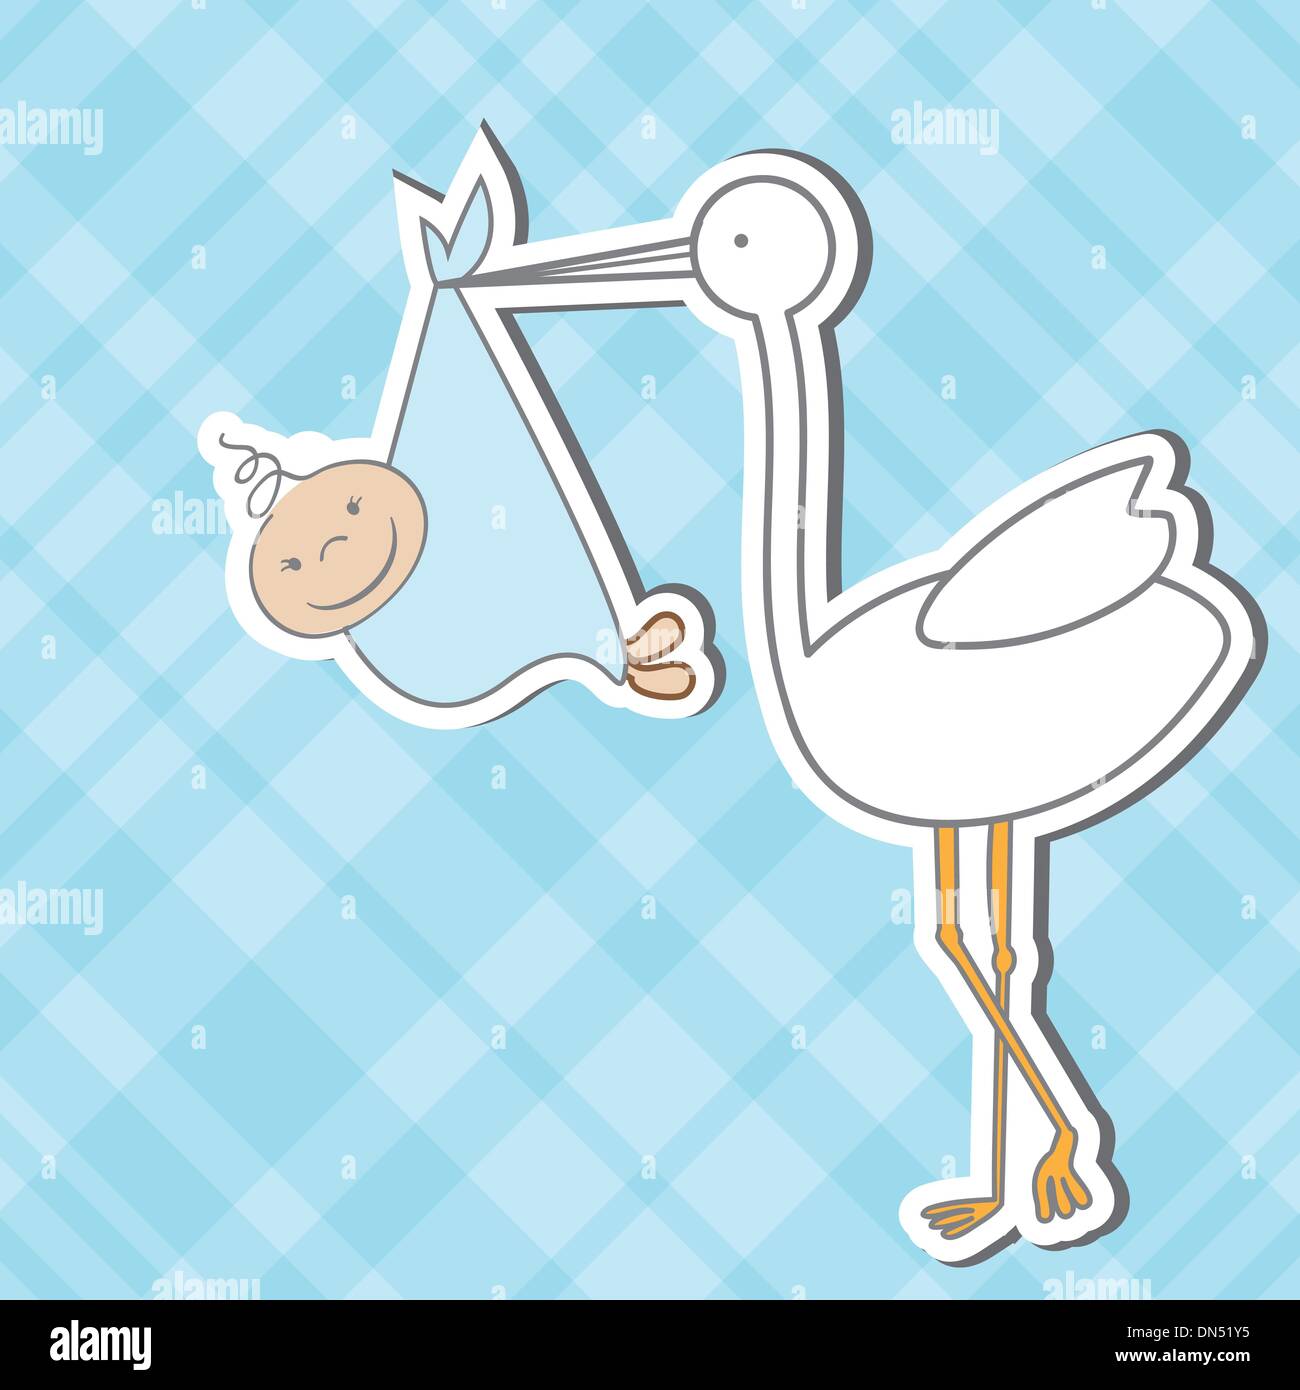 Baby-Einreisekarte mit Storch, das bringt einen netten junge Stock Vektor